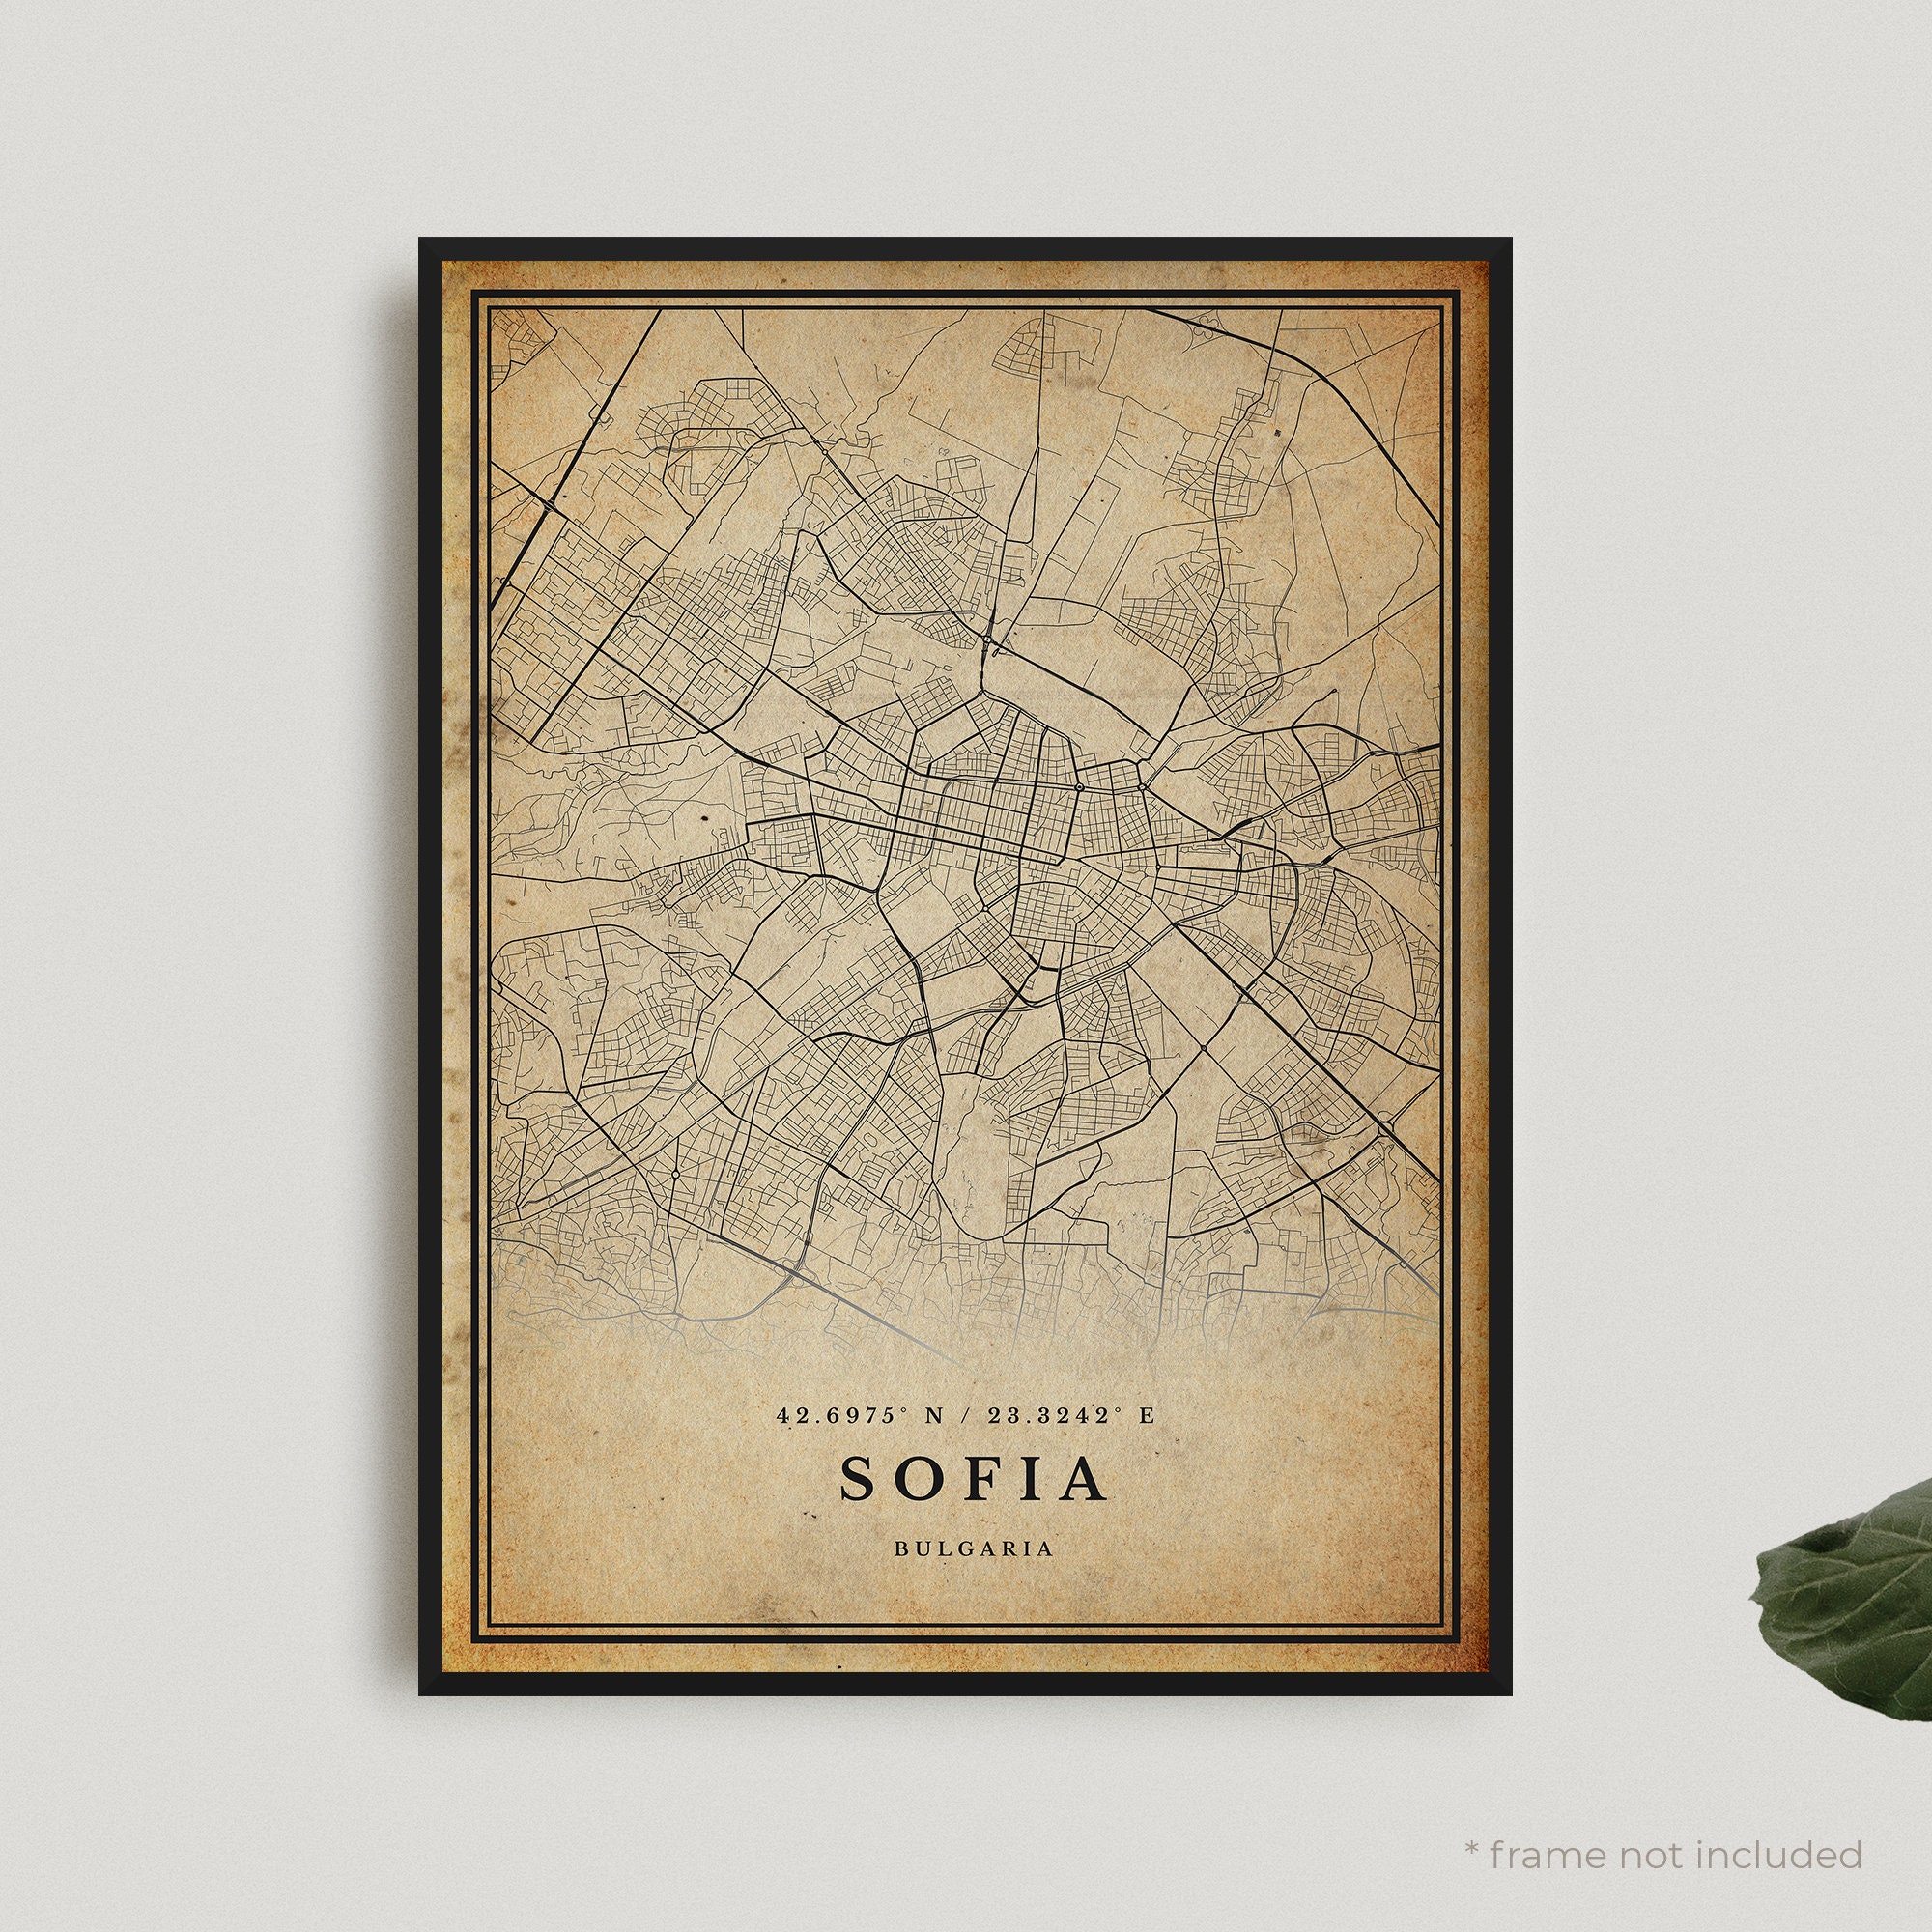 Création originale handmade Plan de ville City Map Poster Affiche Sofia Bulgarie Minimalist Map 